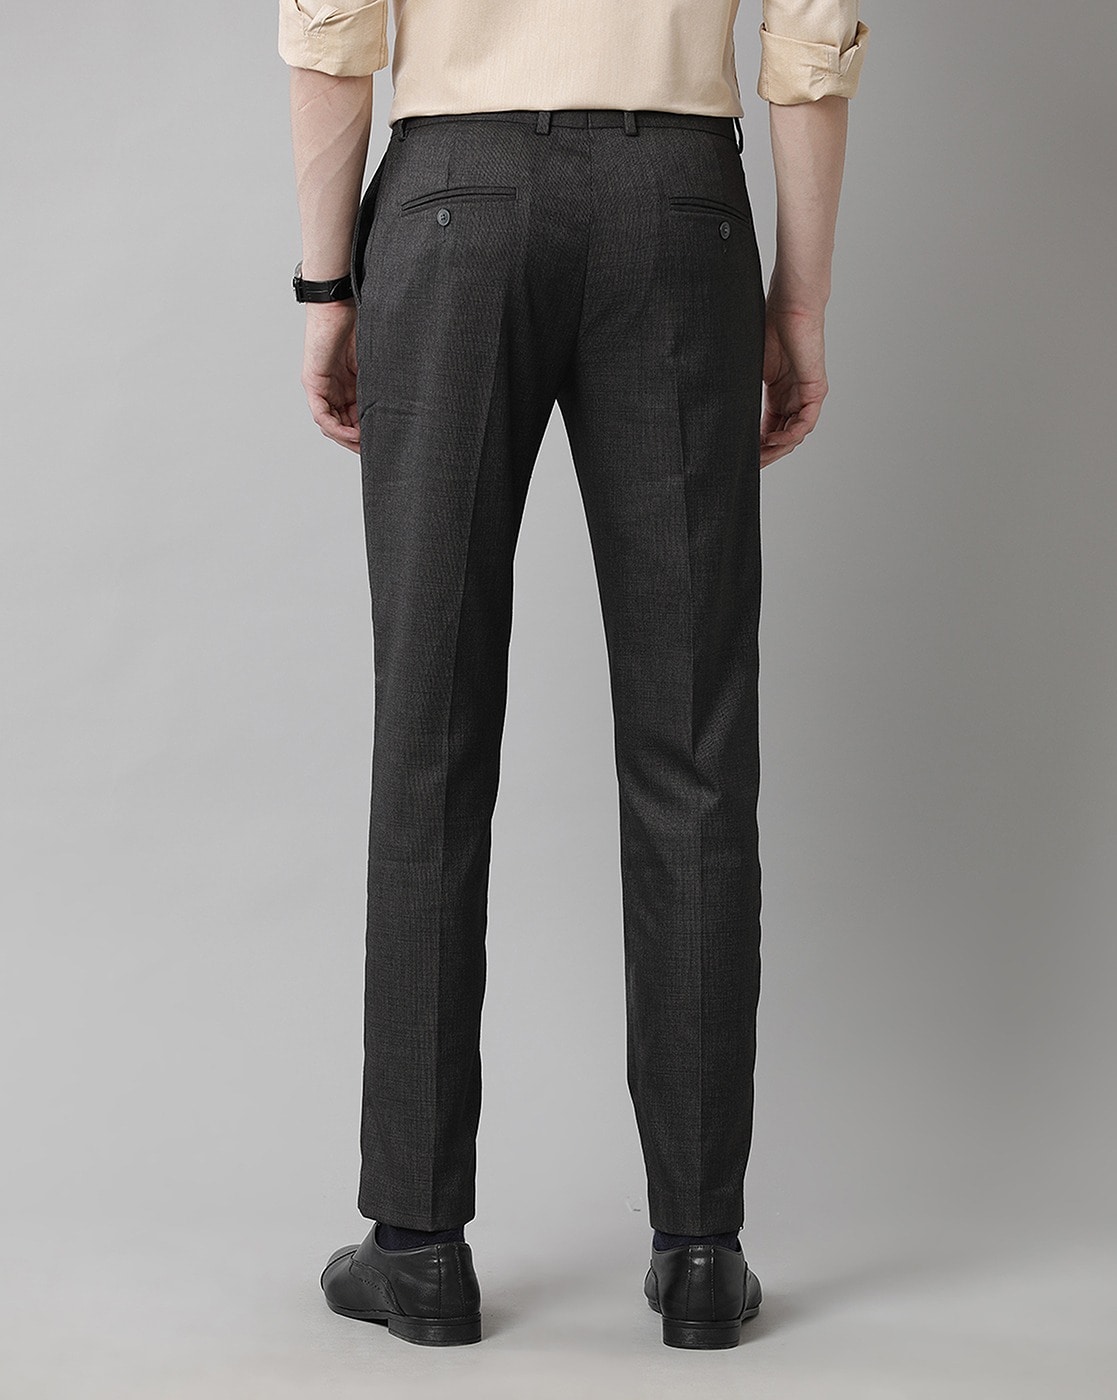 Zegarie Suit Separates Black Solid Men's Dress Pants - Franky Fashion